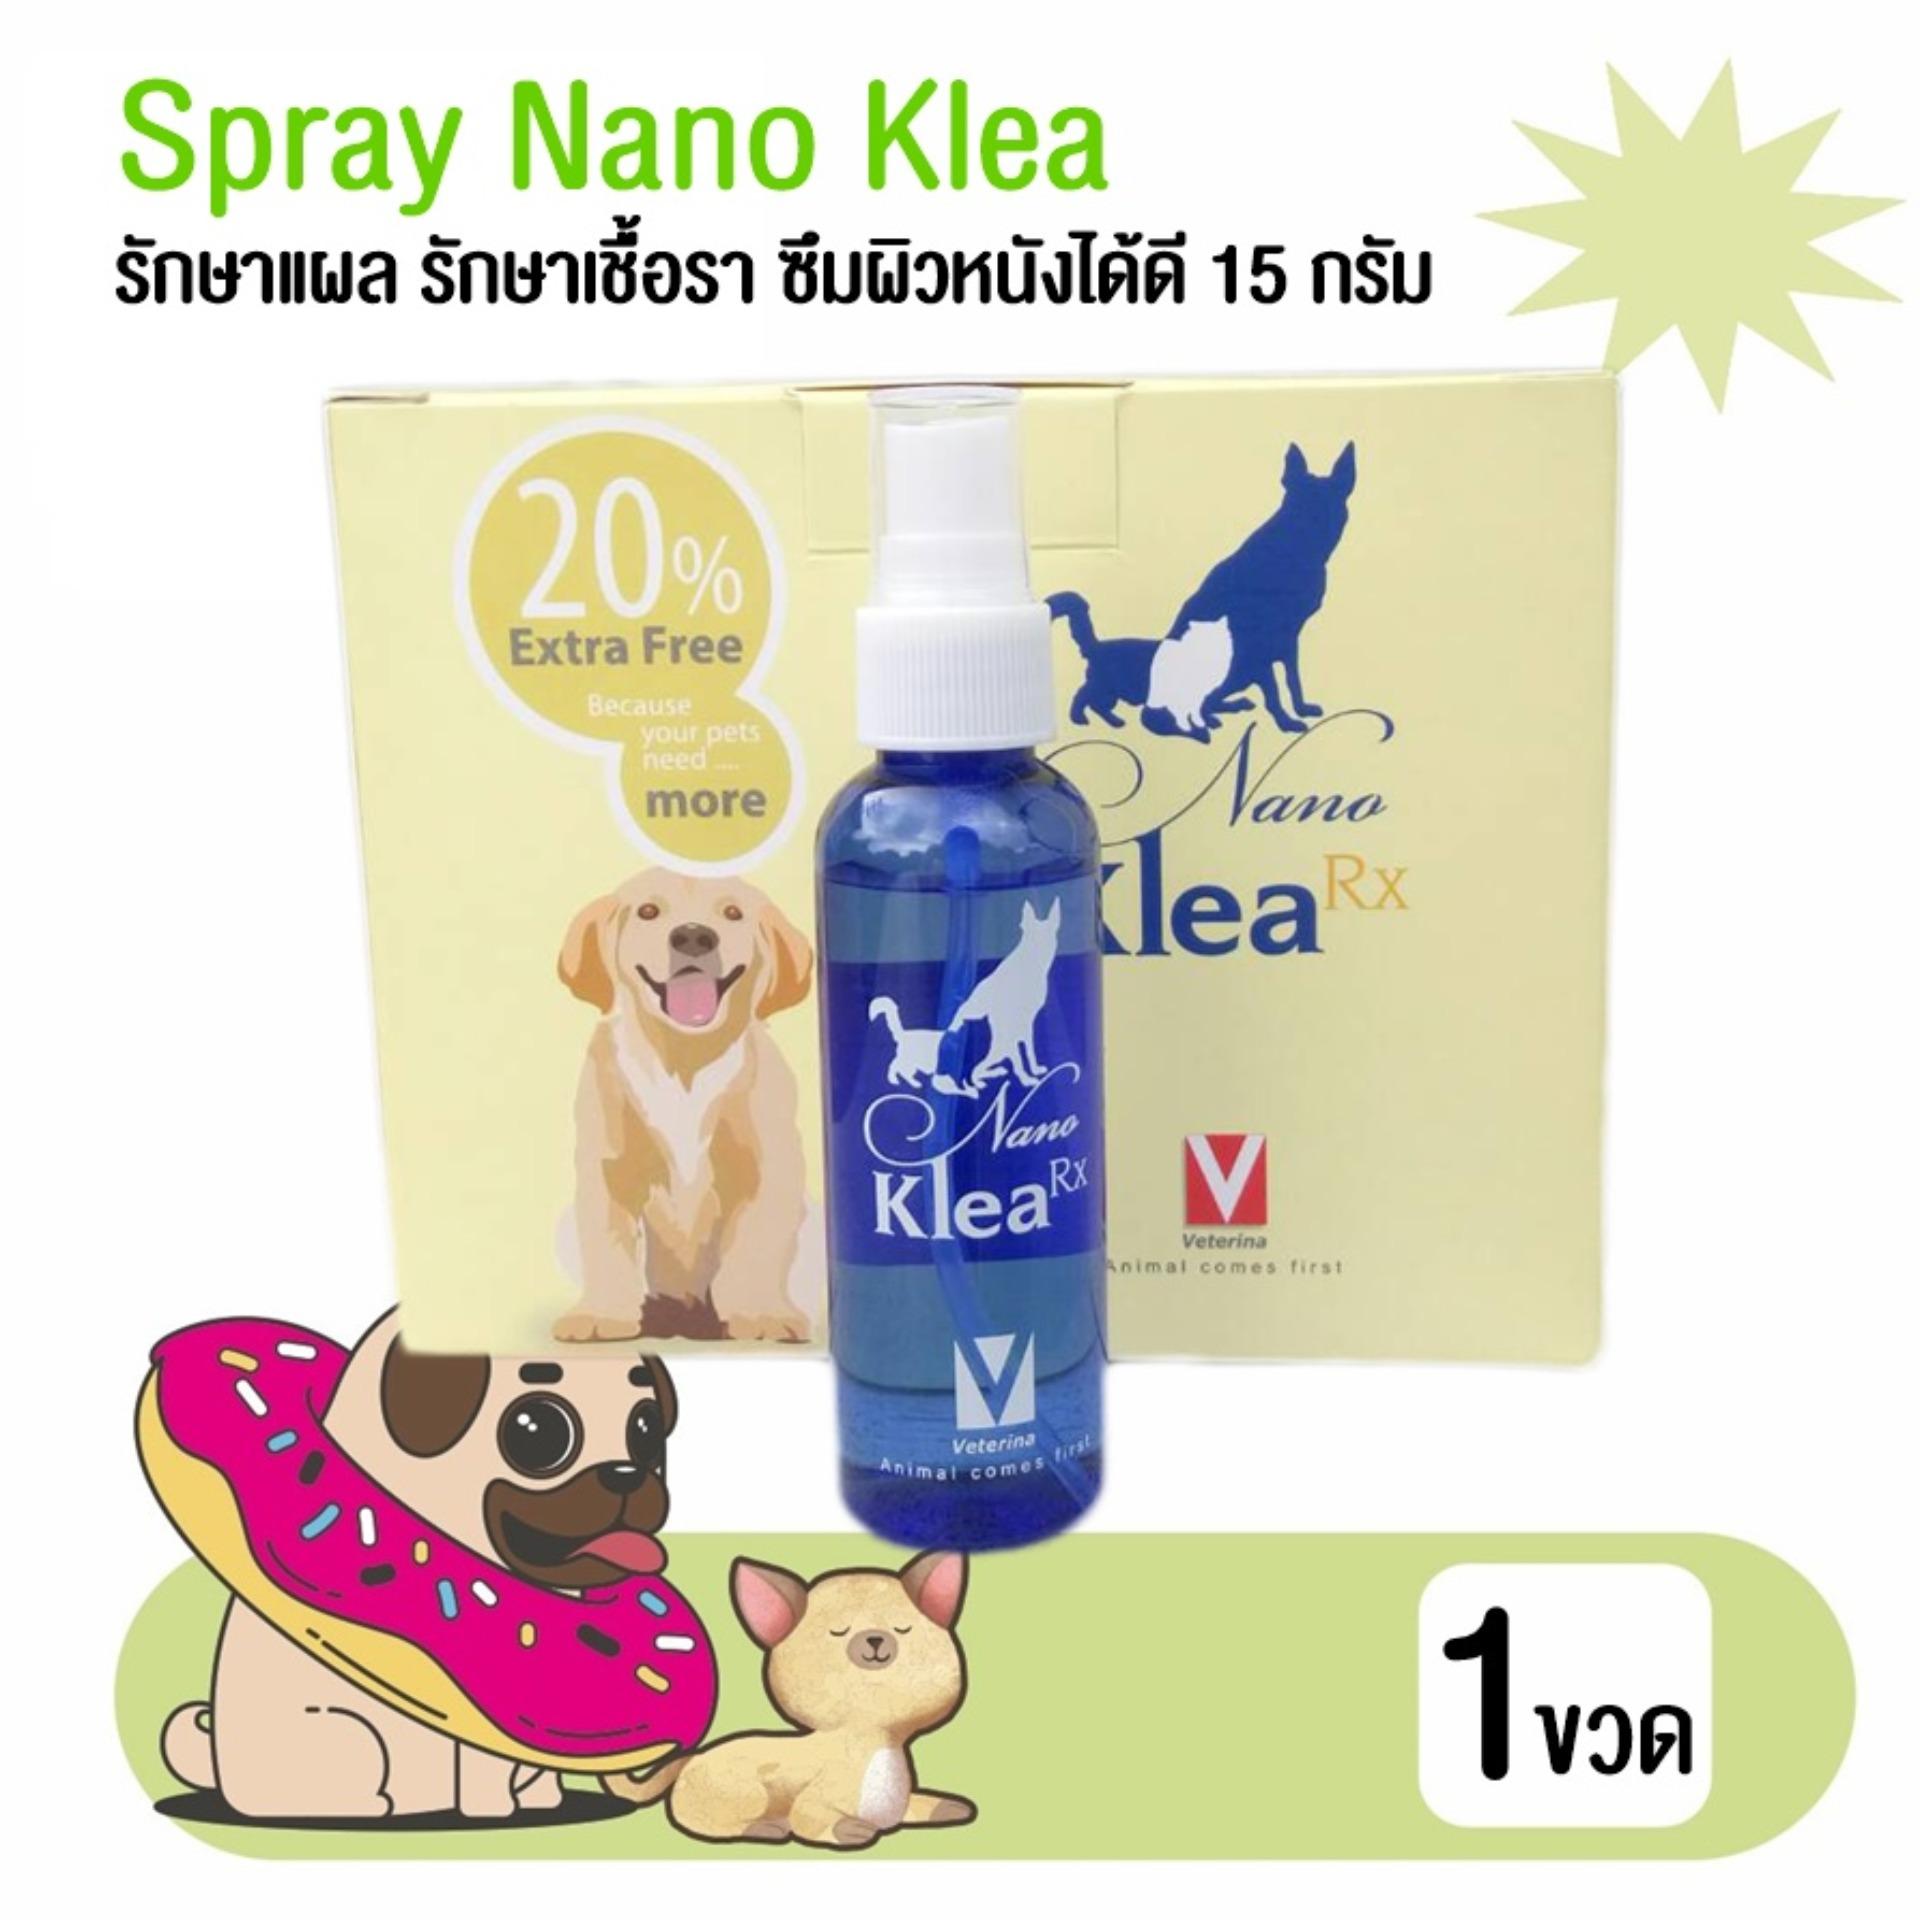 สเปร์ยนาโน เคลียร์ รักษาแผล รักษาเชื้อรา ซึมผิวหนังได้ดี spray Nano Klea 15 กรัม โดย Yes pet shop